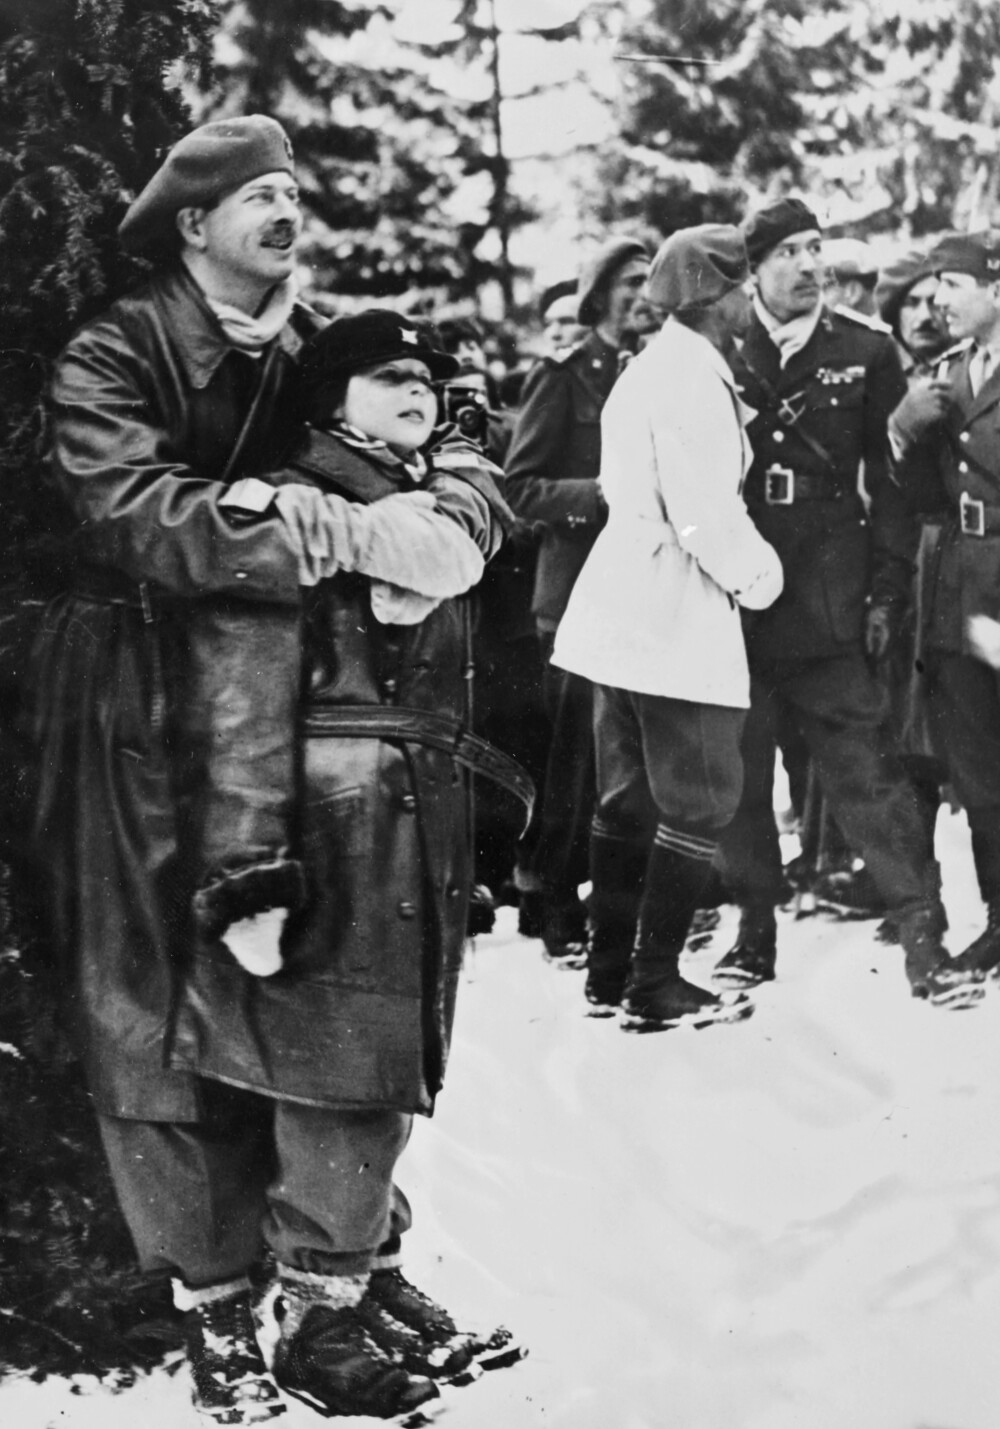 Imagini de COLECŢIE cu Mihai I al României. De la copilul care schia alături de Carol al II-lea până la Regele trimis în exil - Imaginea 7